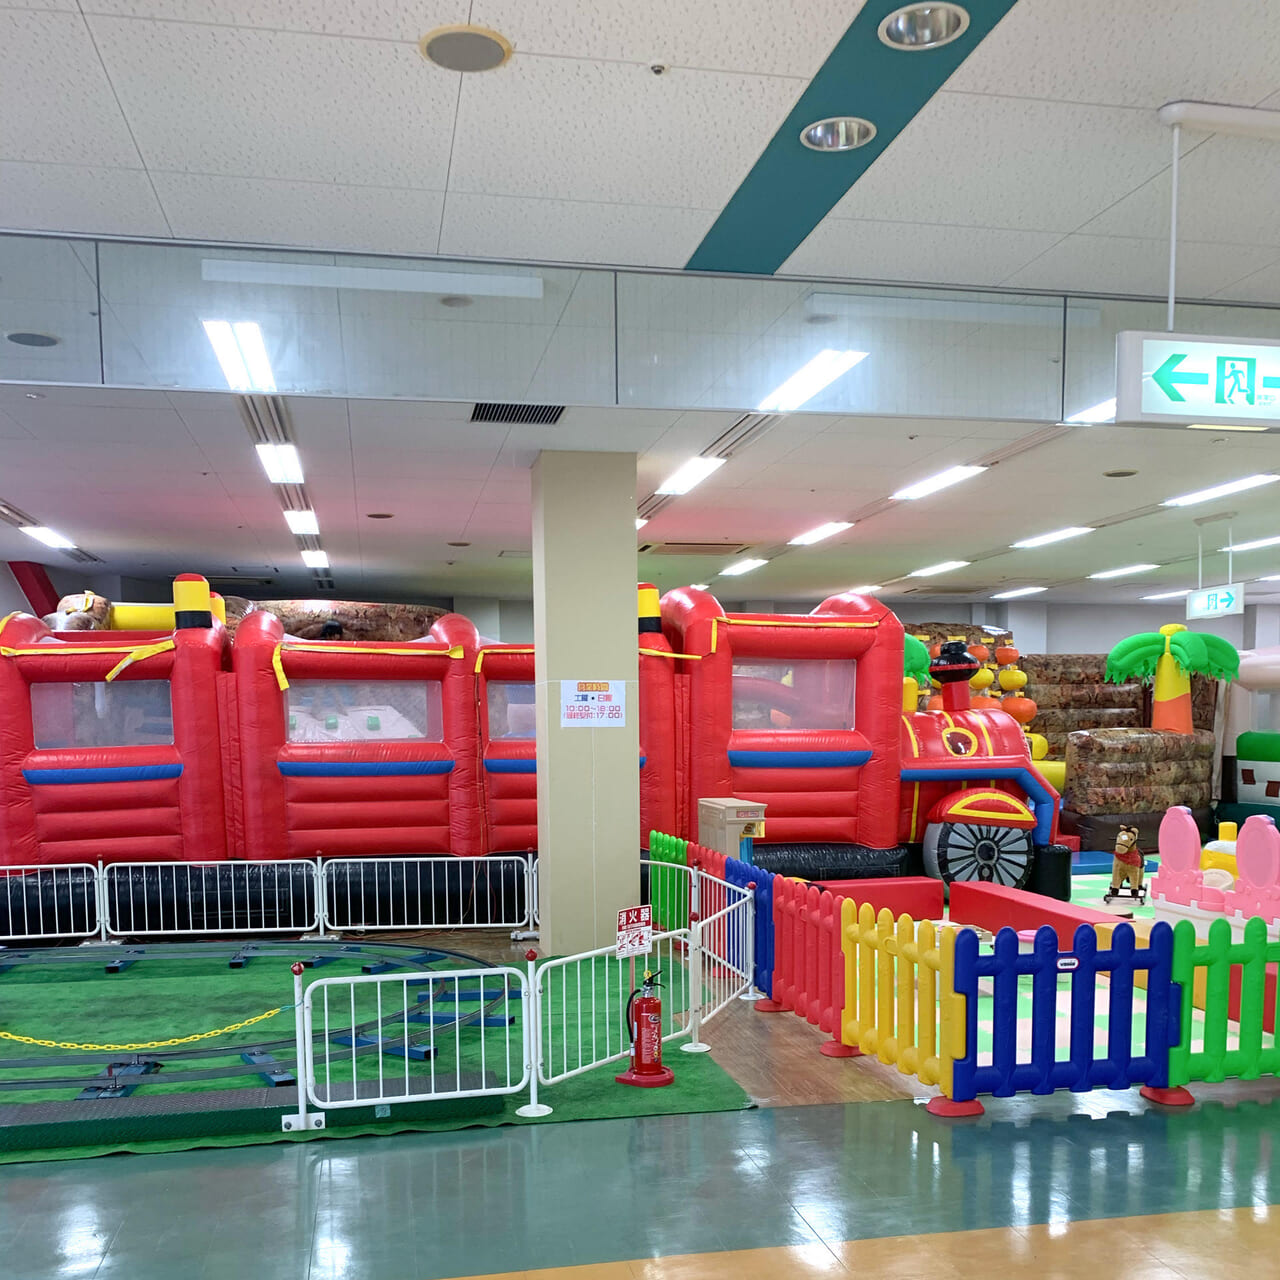 東村にあるワールドプラザ内に子どもたちが遊べる「ぽっぽくんランド」はオープンしました!!